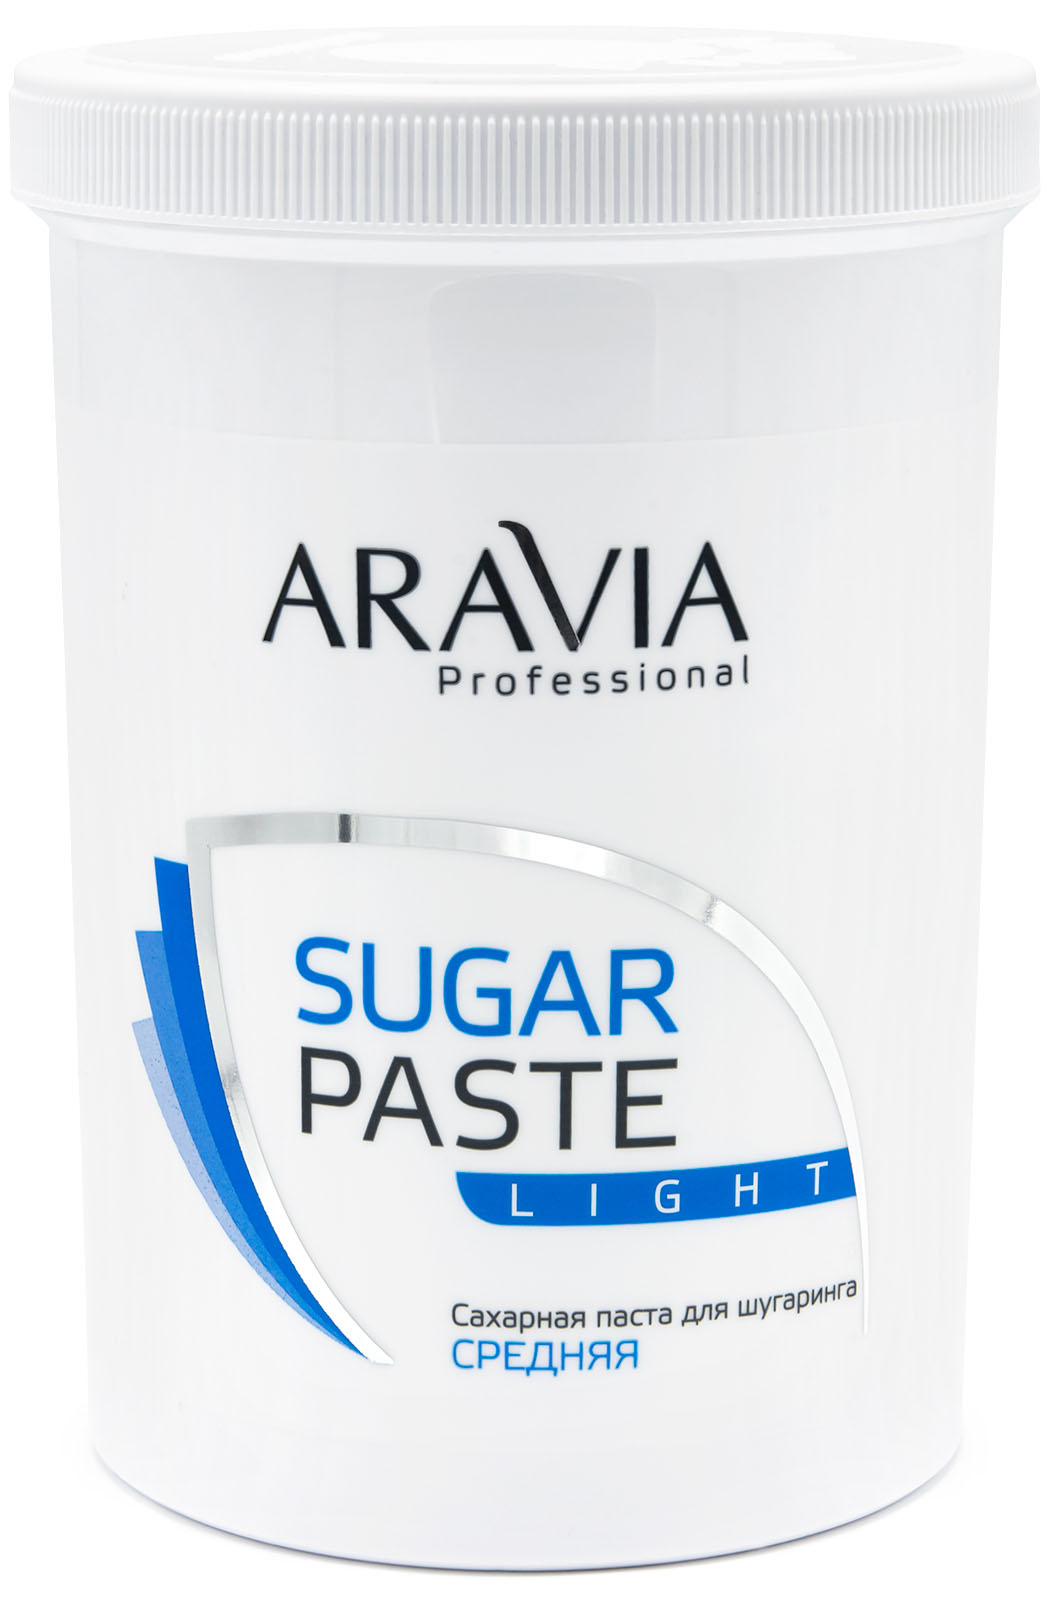 Купить Aravia Professional Aravia Professional Сахарная паста для шугаринга Лёгкая 1500 гр (Aravia Professional, Spa Депиляция), Россия